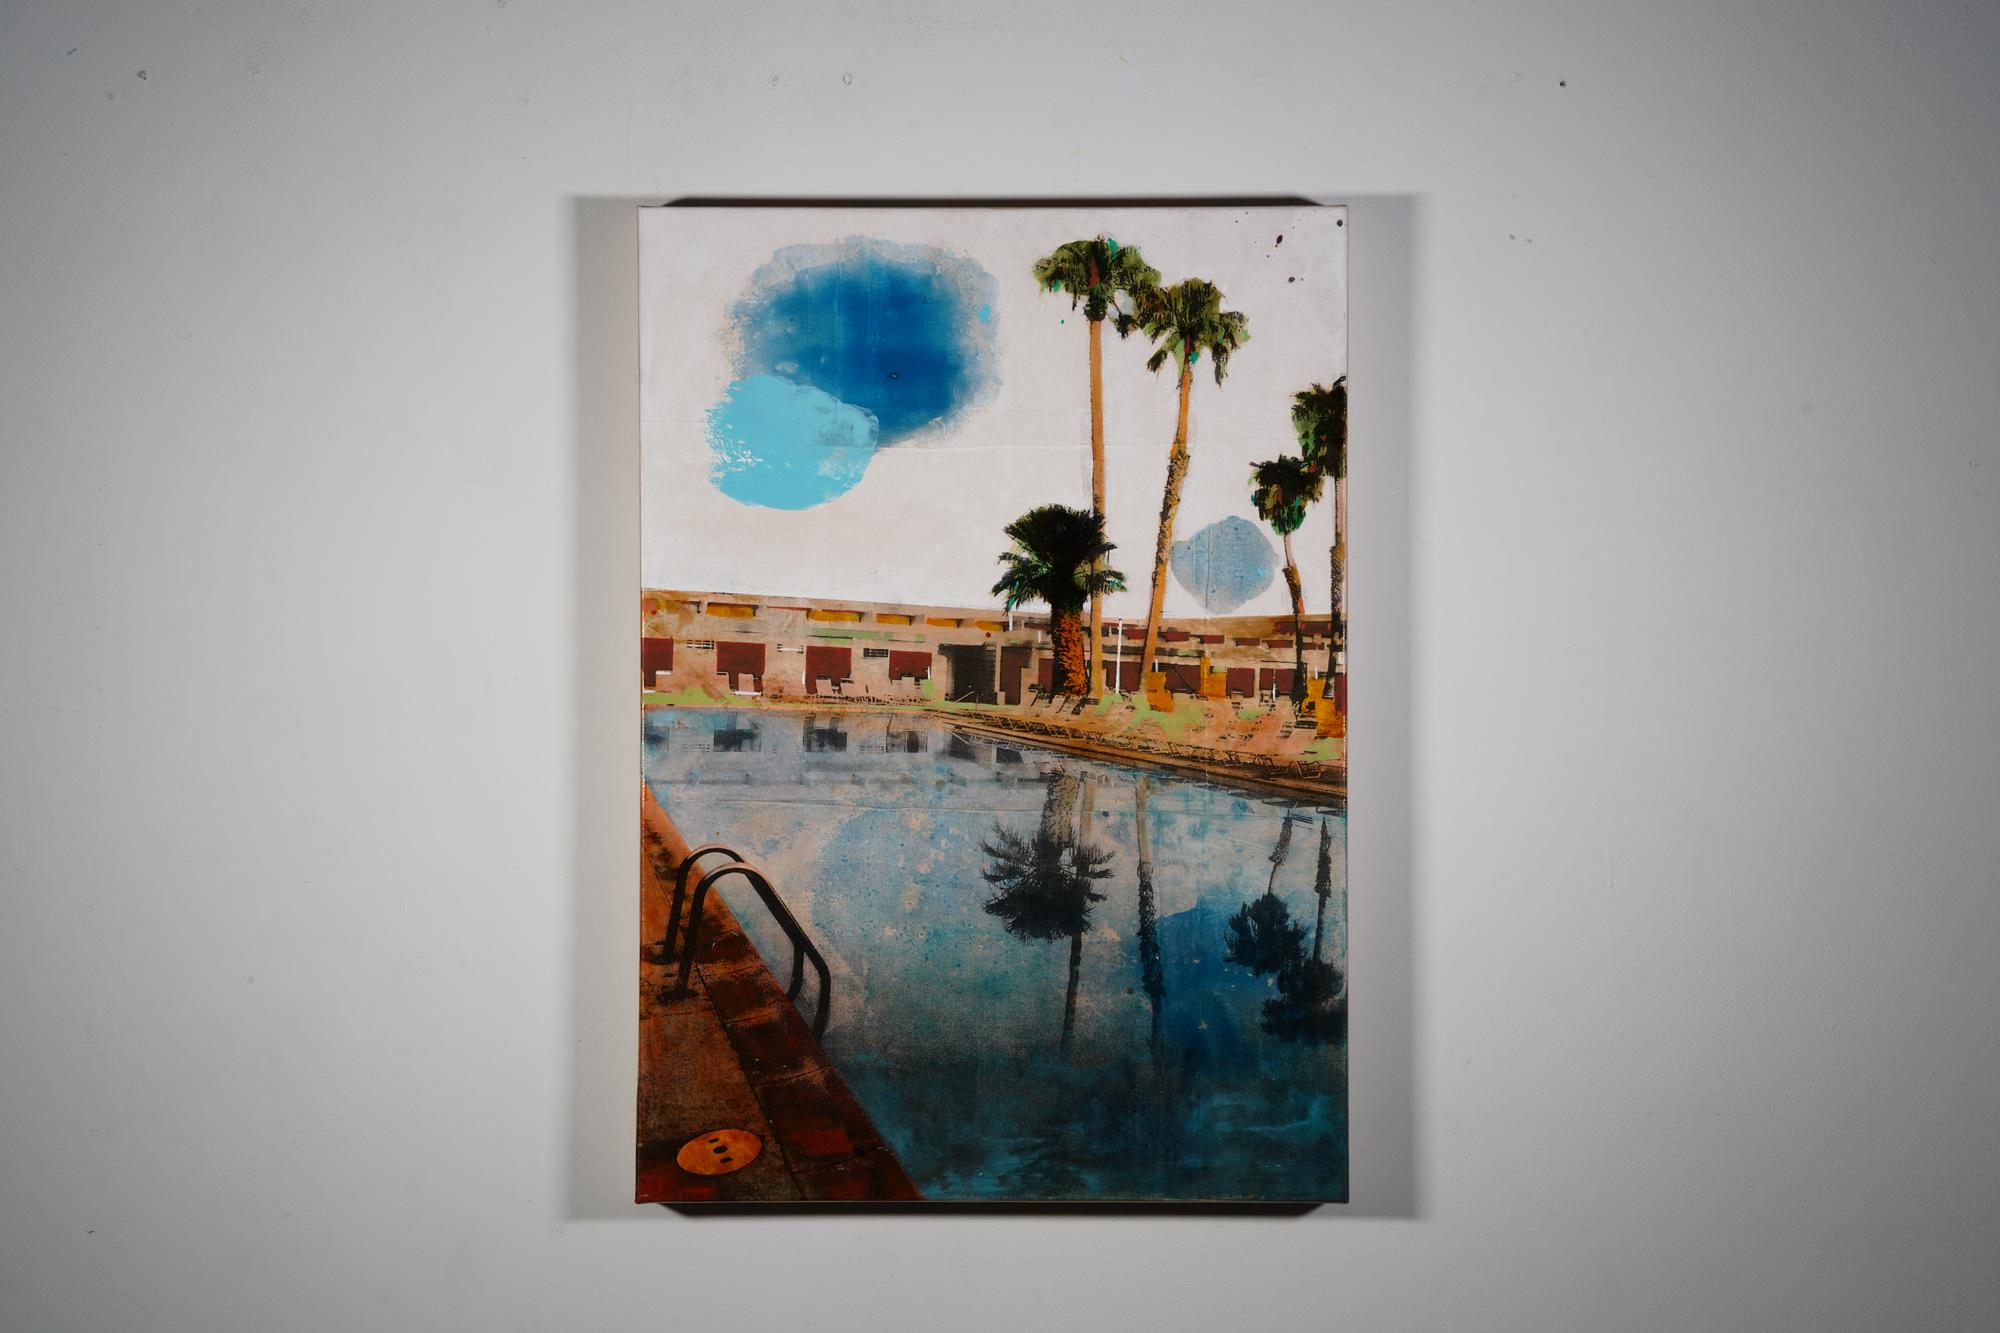 Miroir de palmier -  un reflet californien d'arbres de palmier dans une piscine - Painting de Ayline Olukman